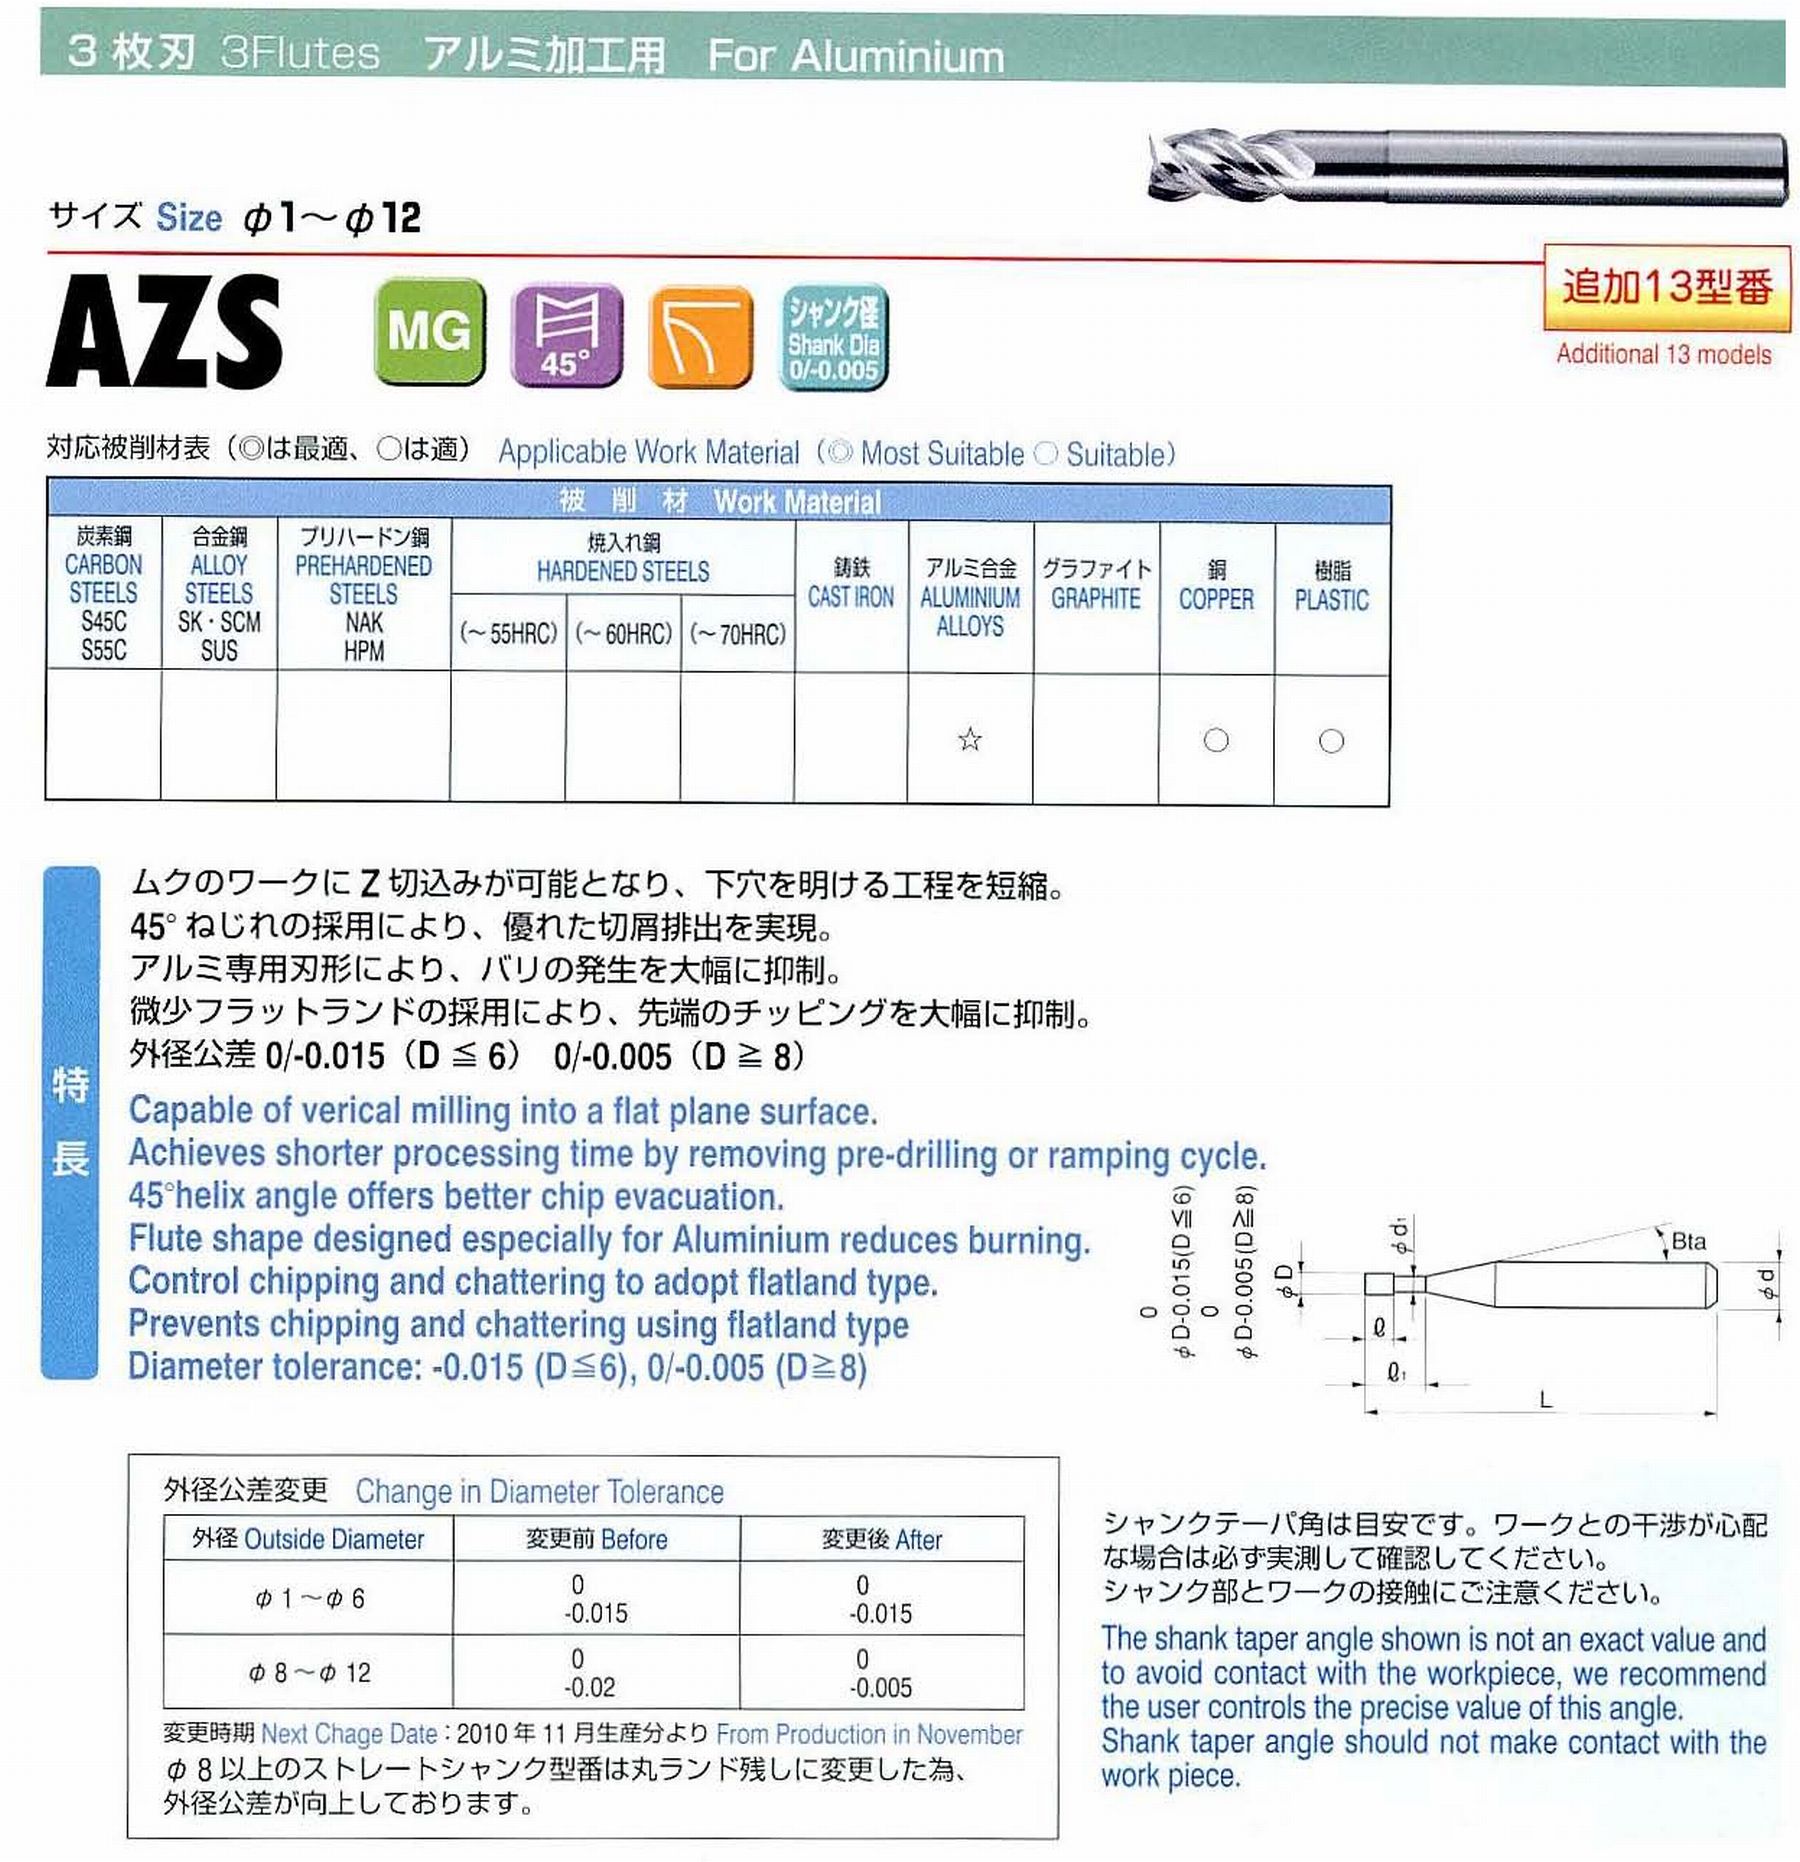 ユニオンツール 3枚刃 AZS3120-600 外径12 有効長60 刃長24 首径11.82 シャンクテーパ角- 全長110 シャンク径12